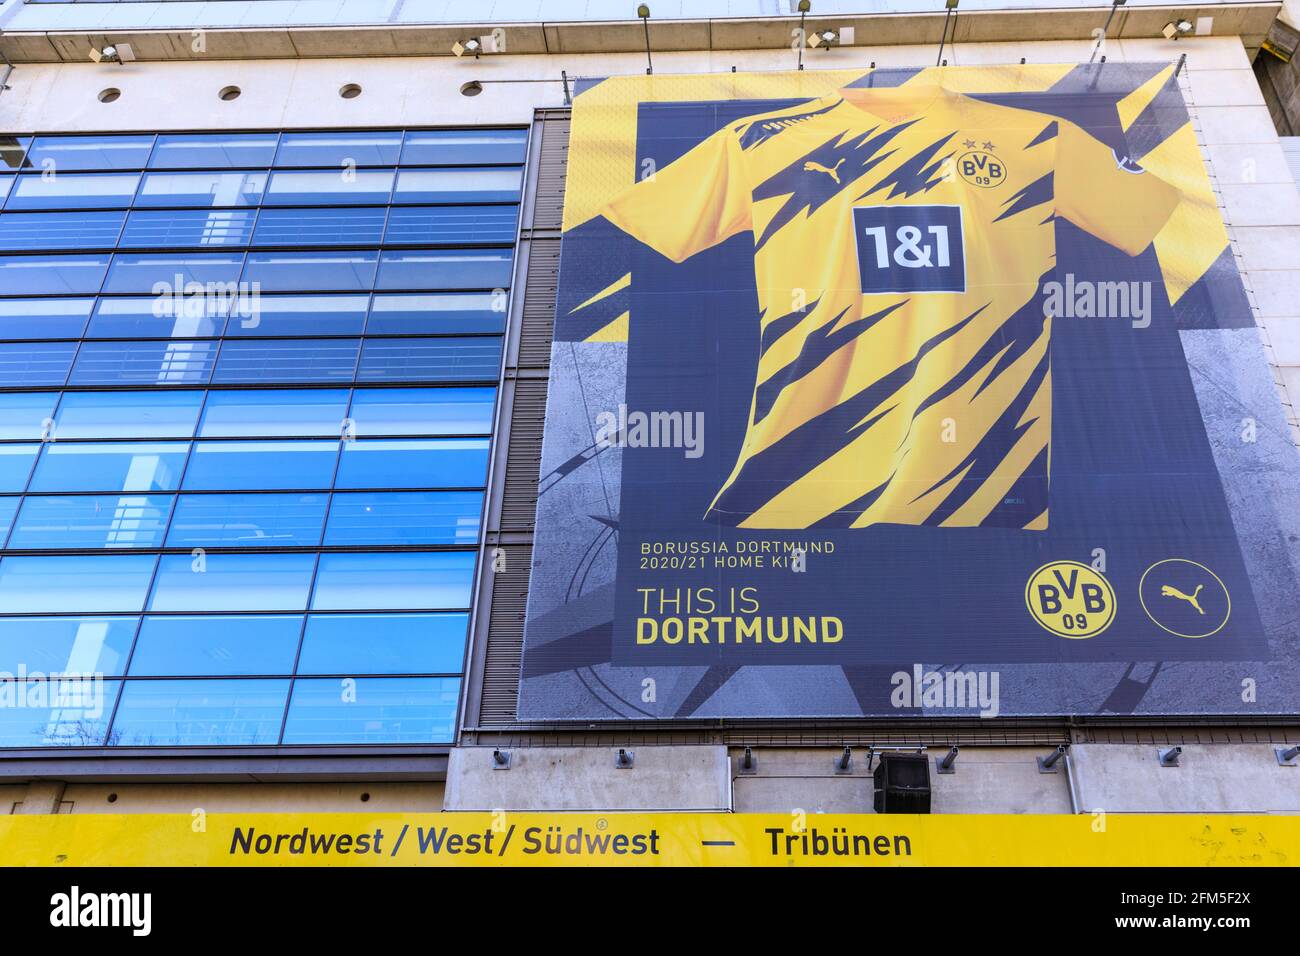 Signal Iduna Park, Borussia Dortmund football club BVB09 stade aréna front extérieur, Dortmund, Allemagne Banque D'Images